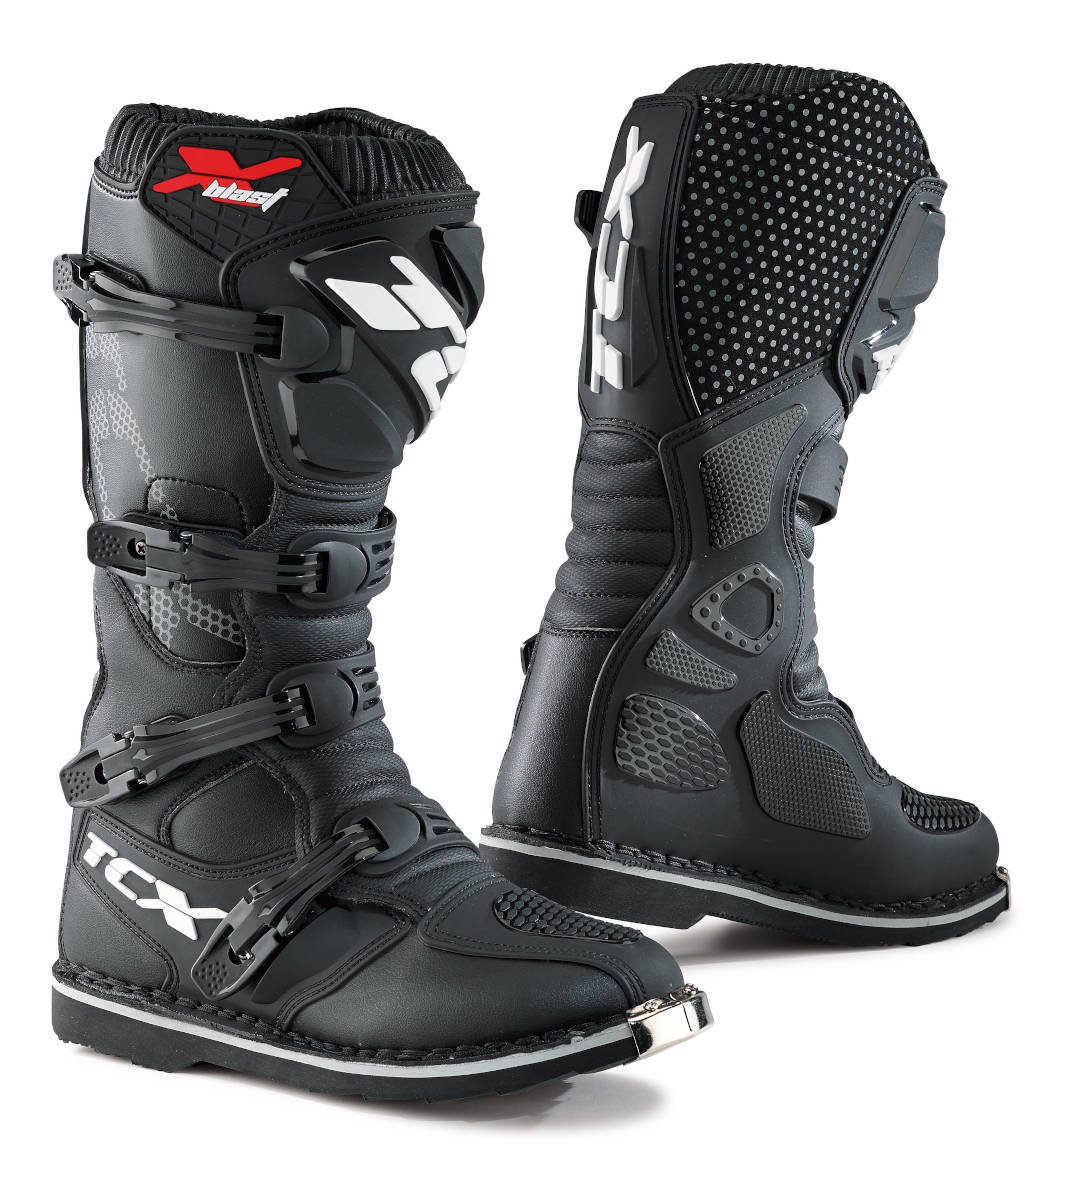 New X-Blast off-road boots by TCX